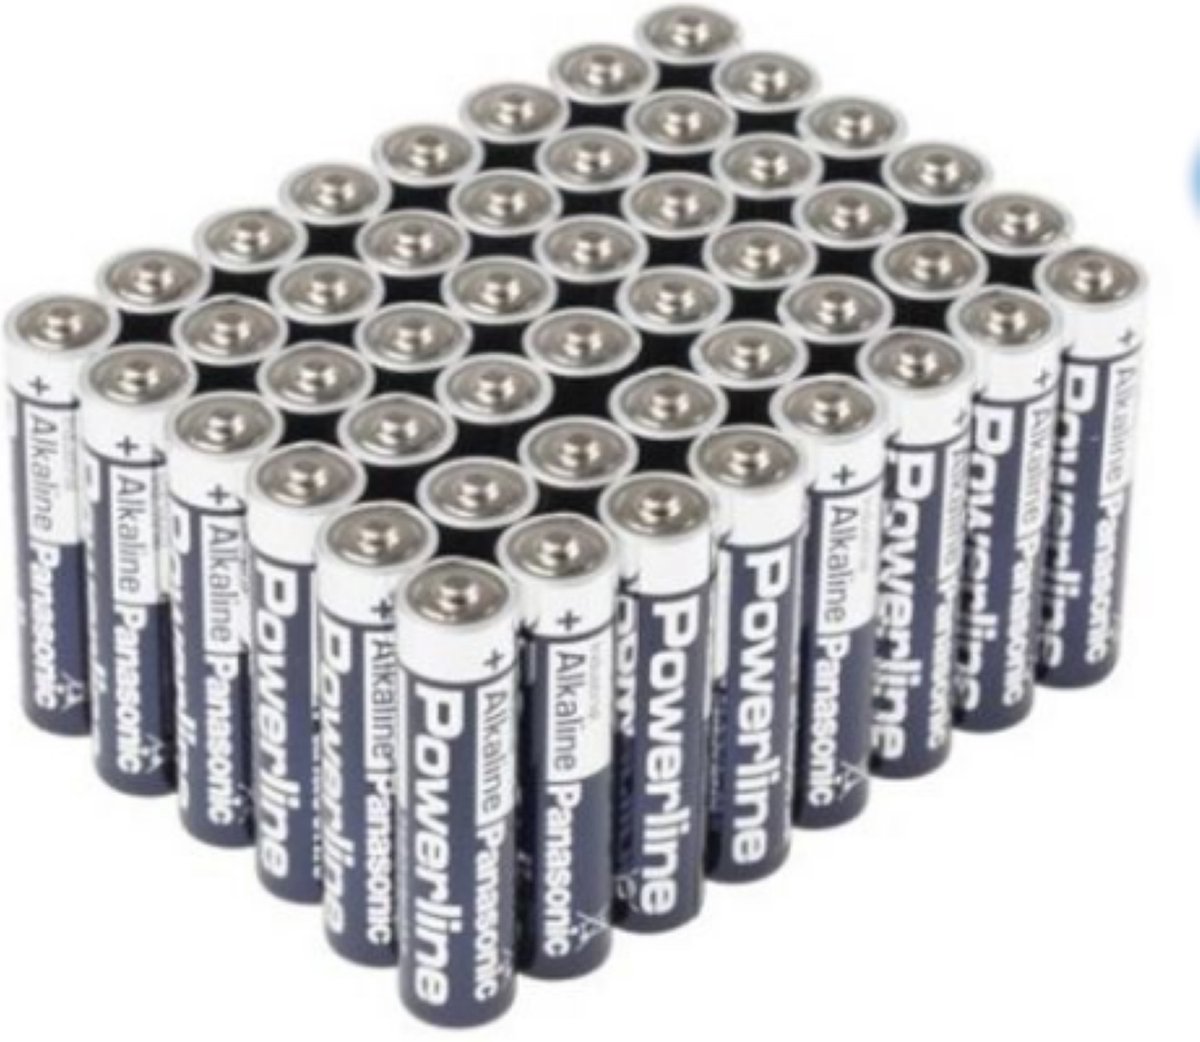 Panasonic Powerline Batterij, niet oplaadbaar - AAA - 48 stuks